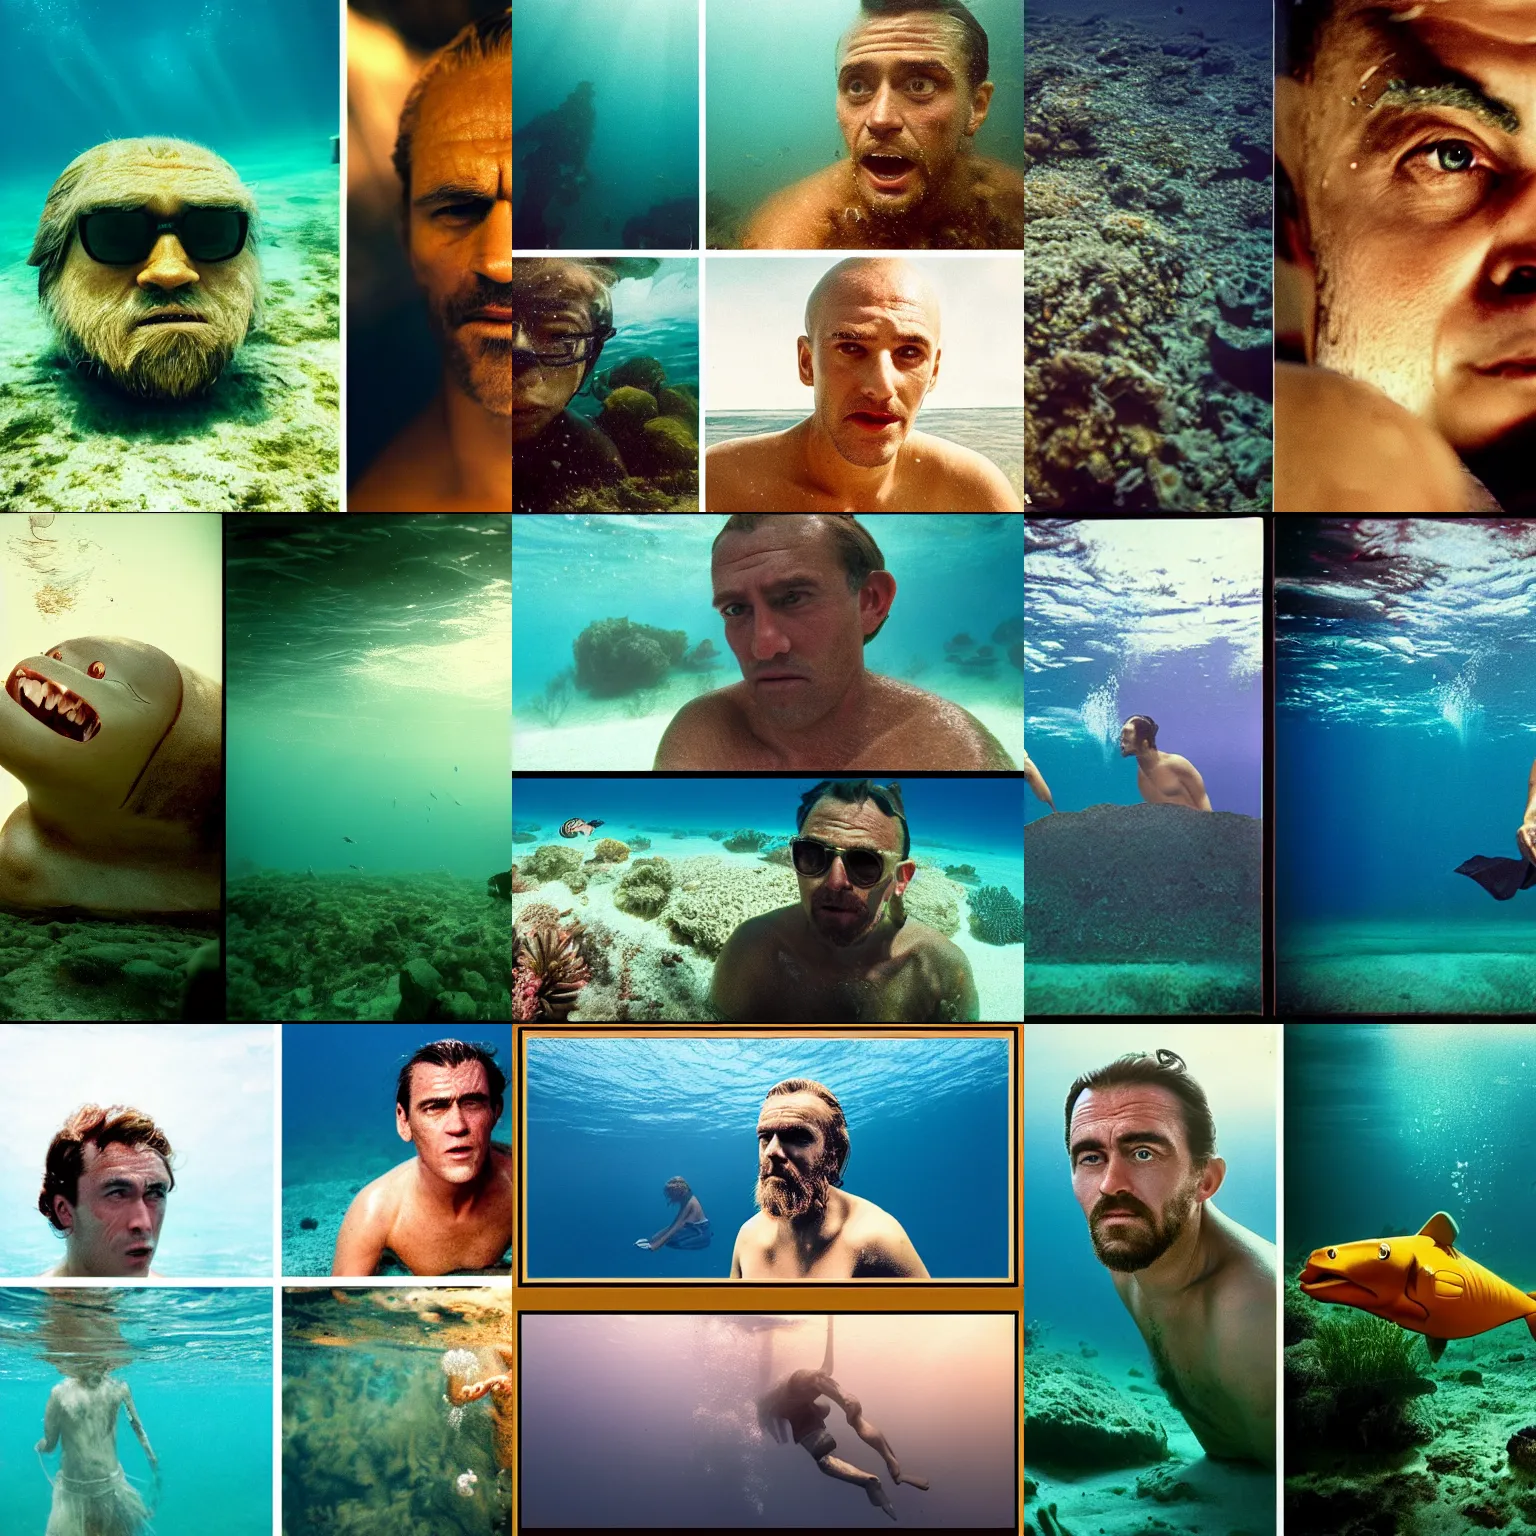 Prompt: Kodak portra 160, 4K, split screen: famous french actor in low budget kon-tiki movie remake, underwater scene